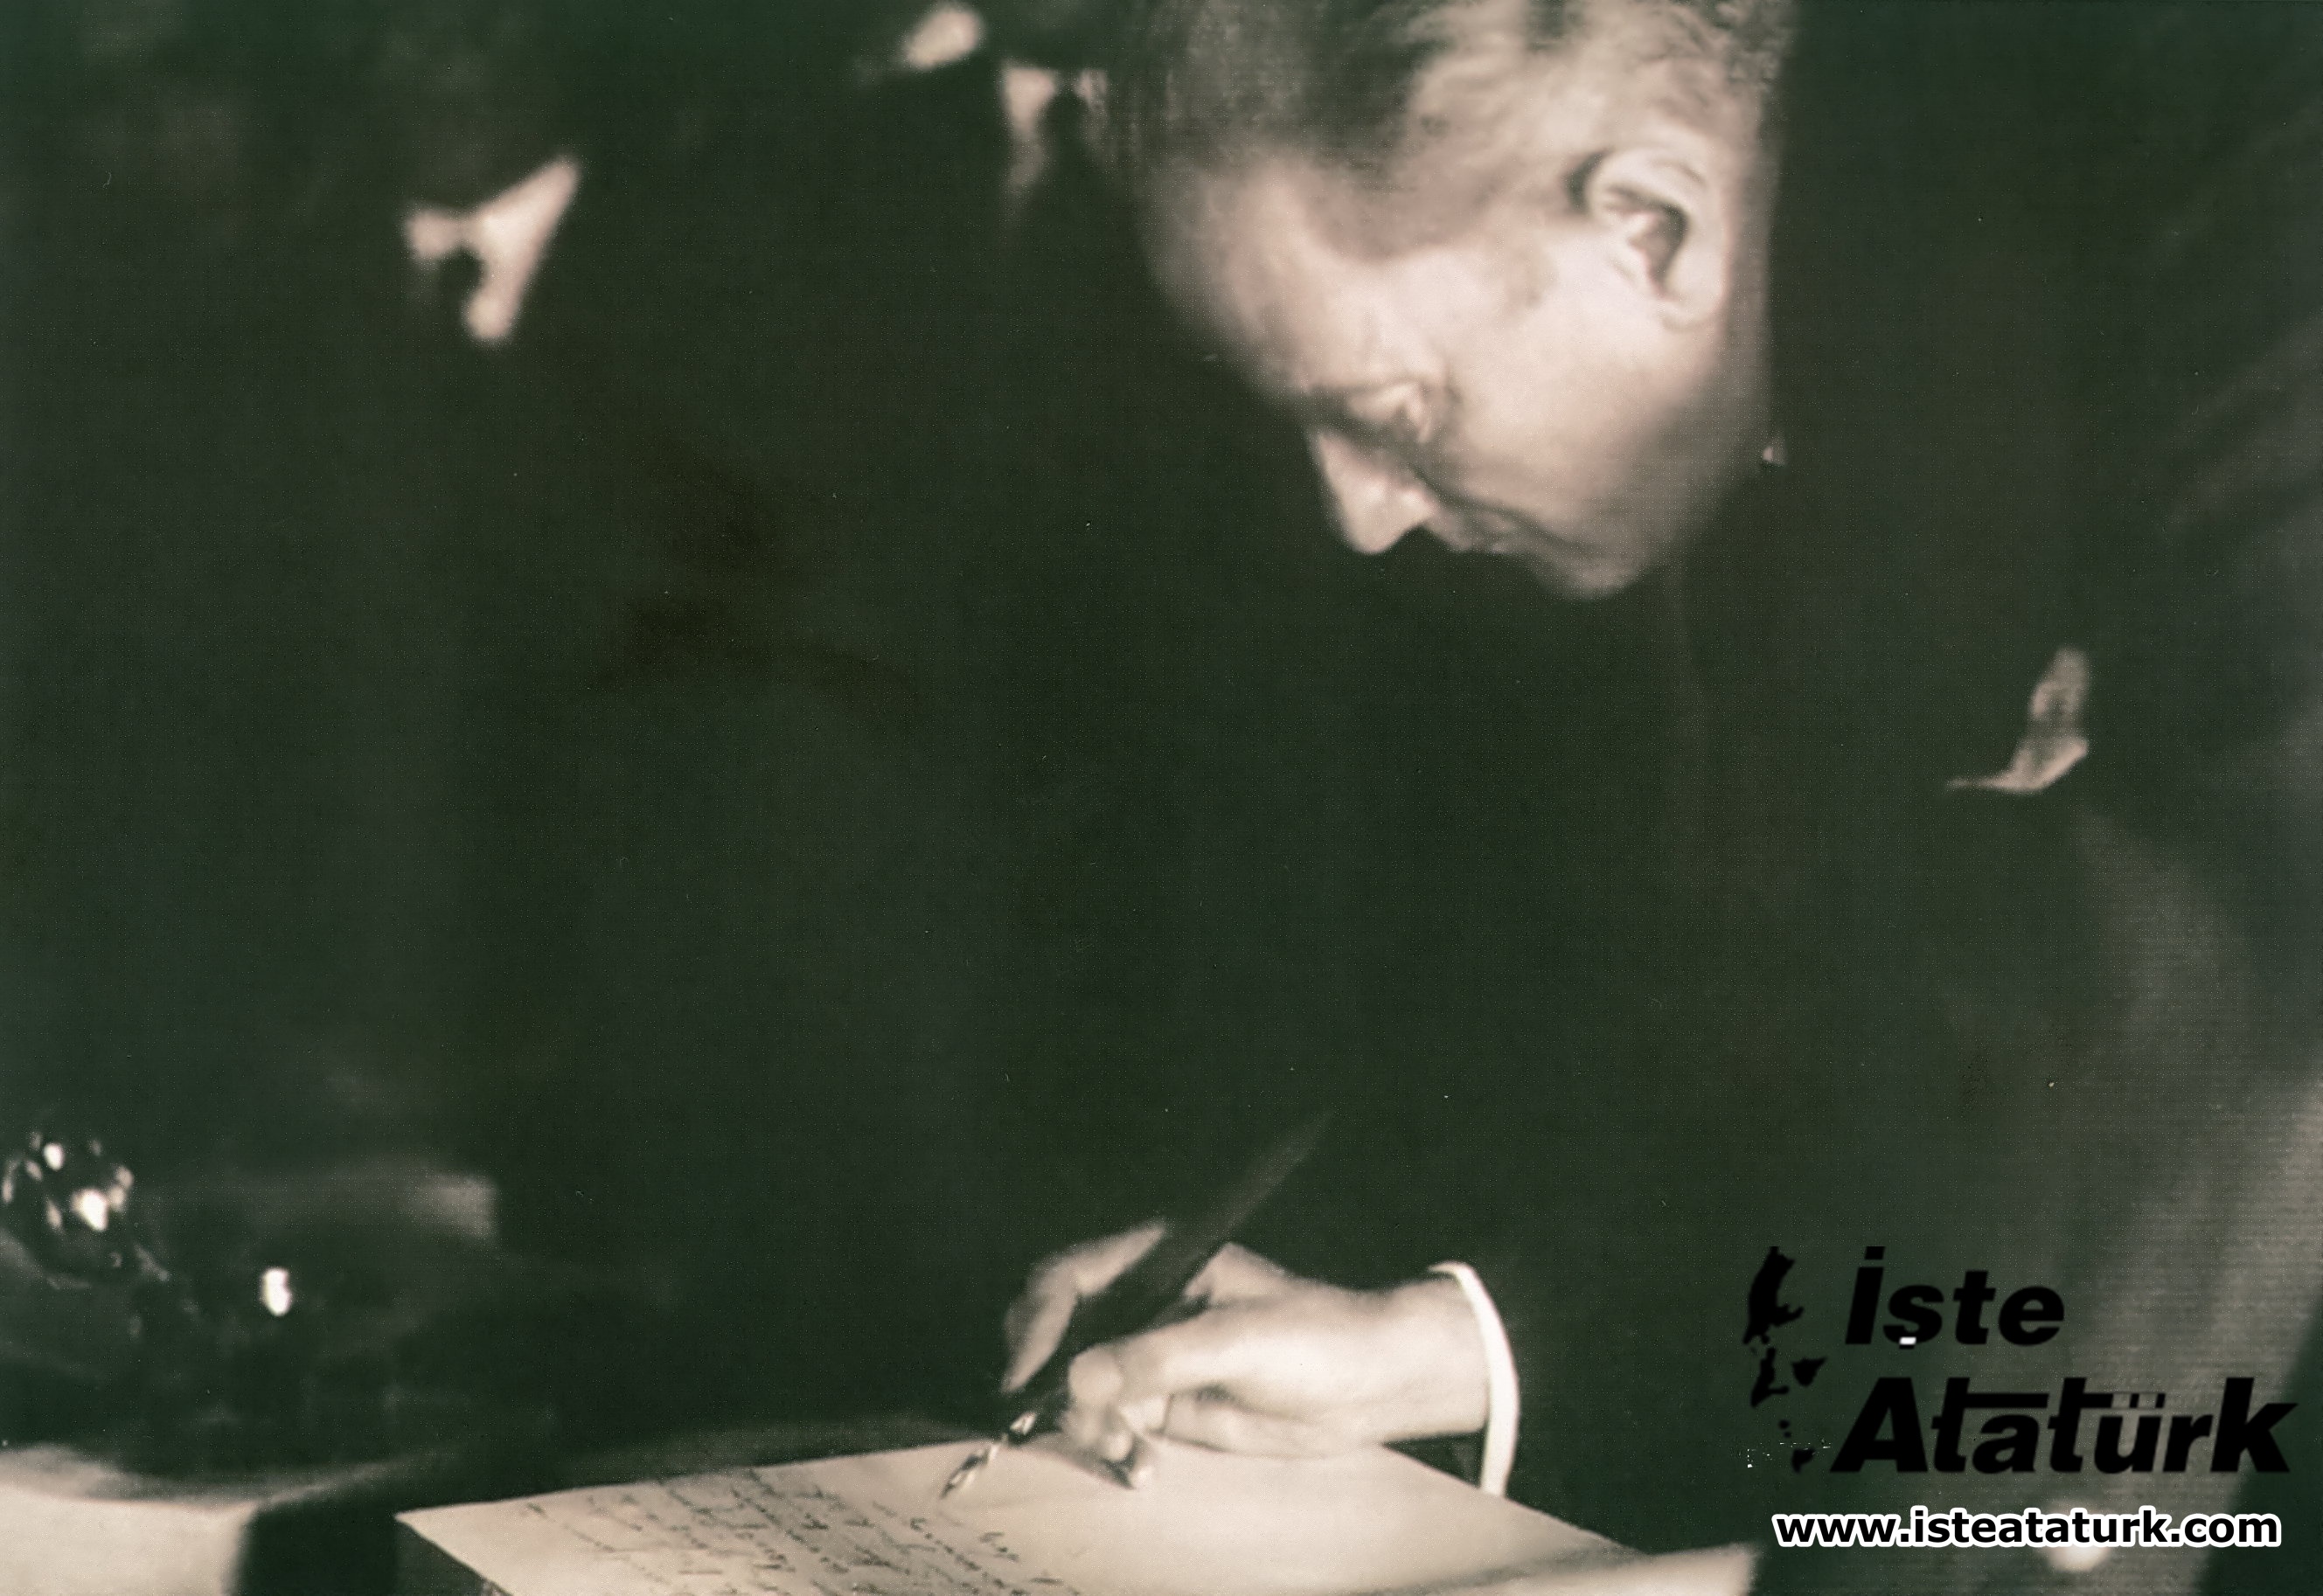 Kemalism and Atatürk's Principles